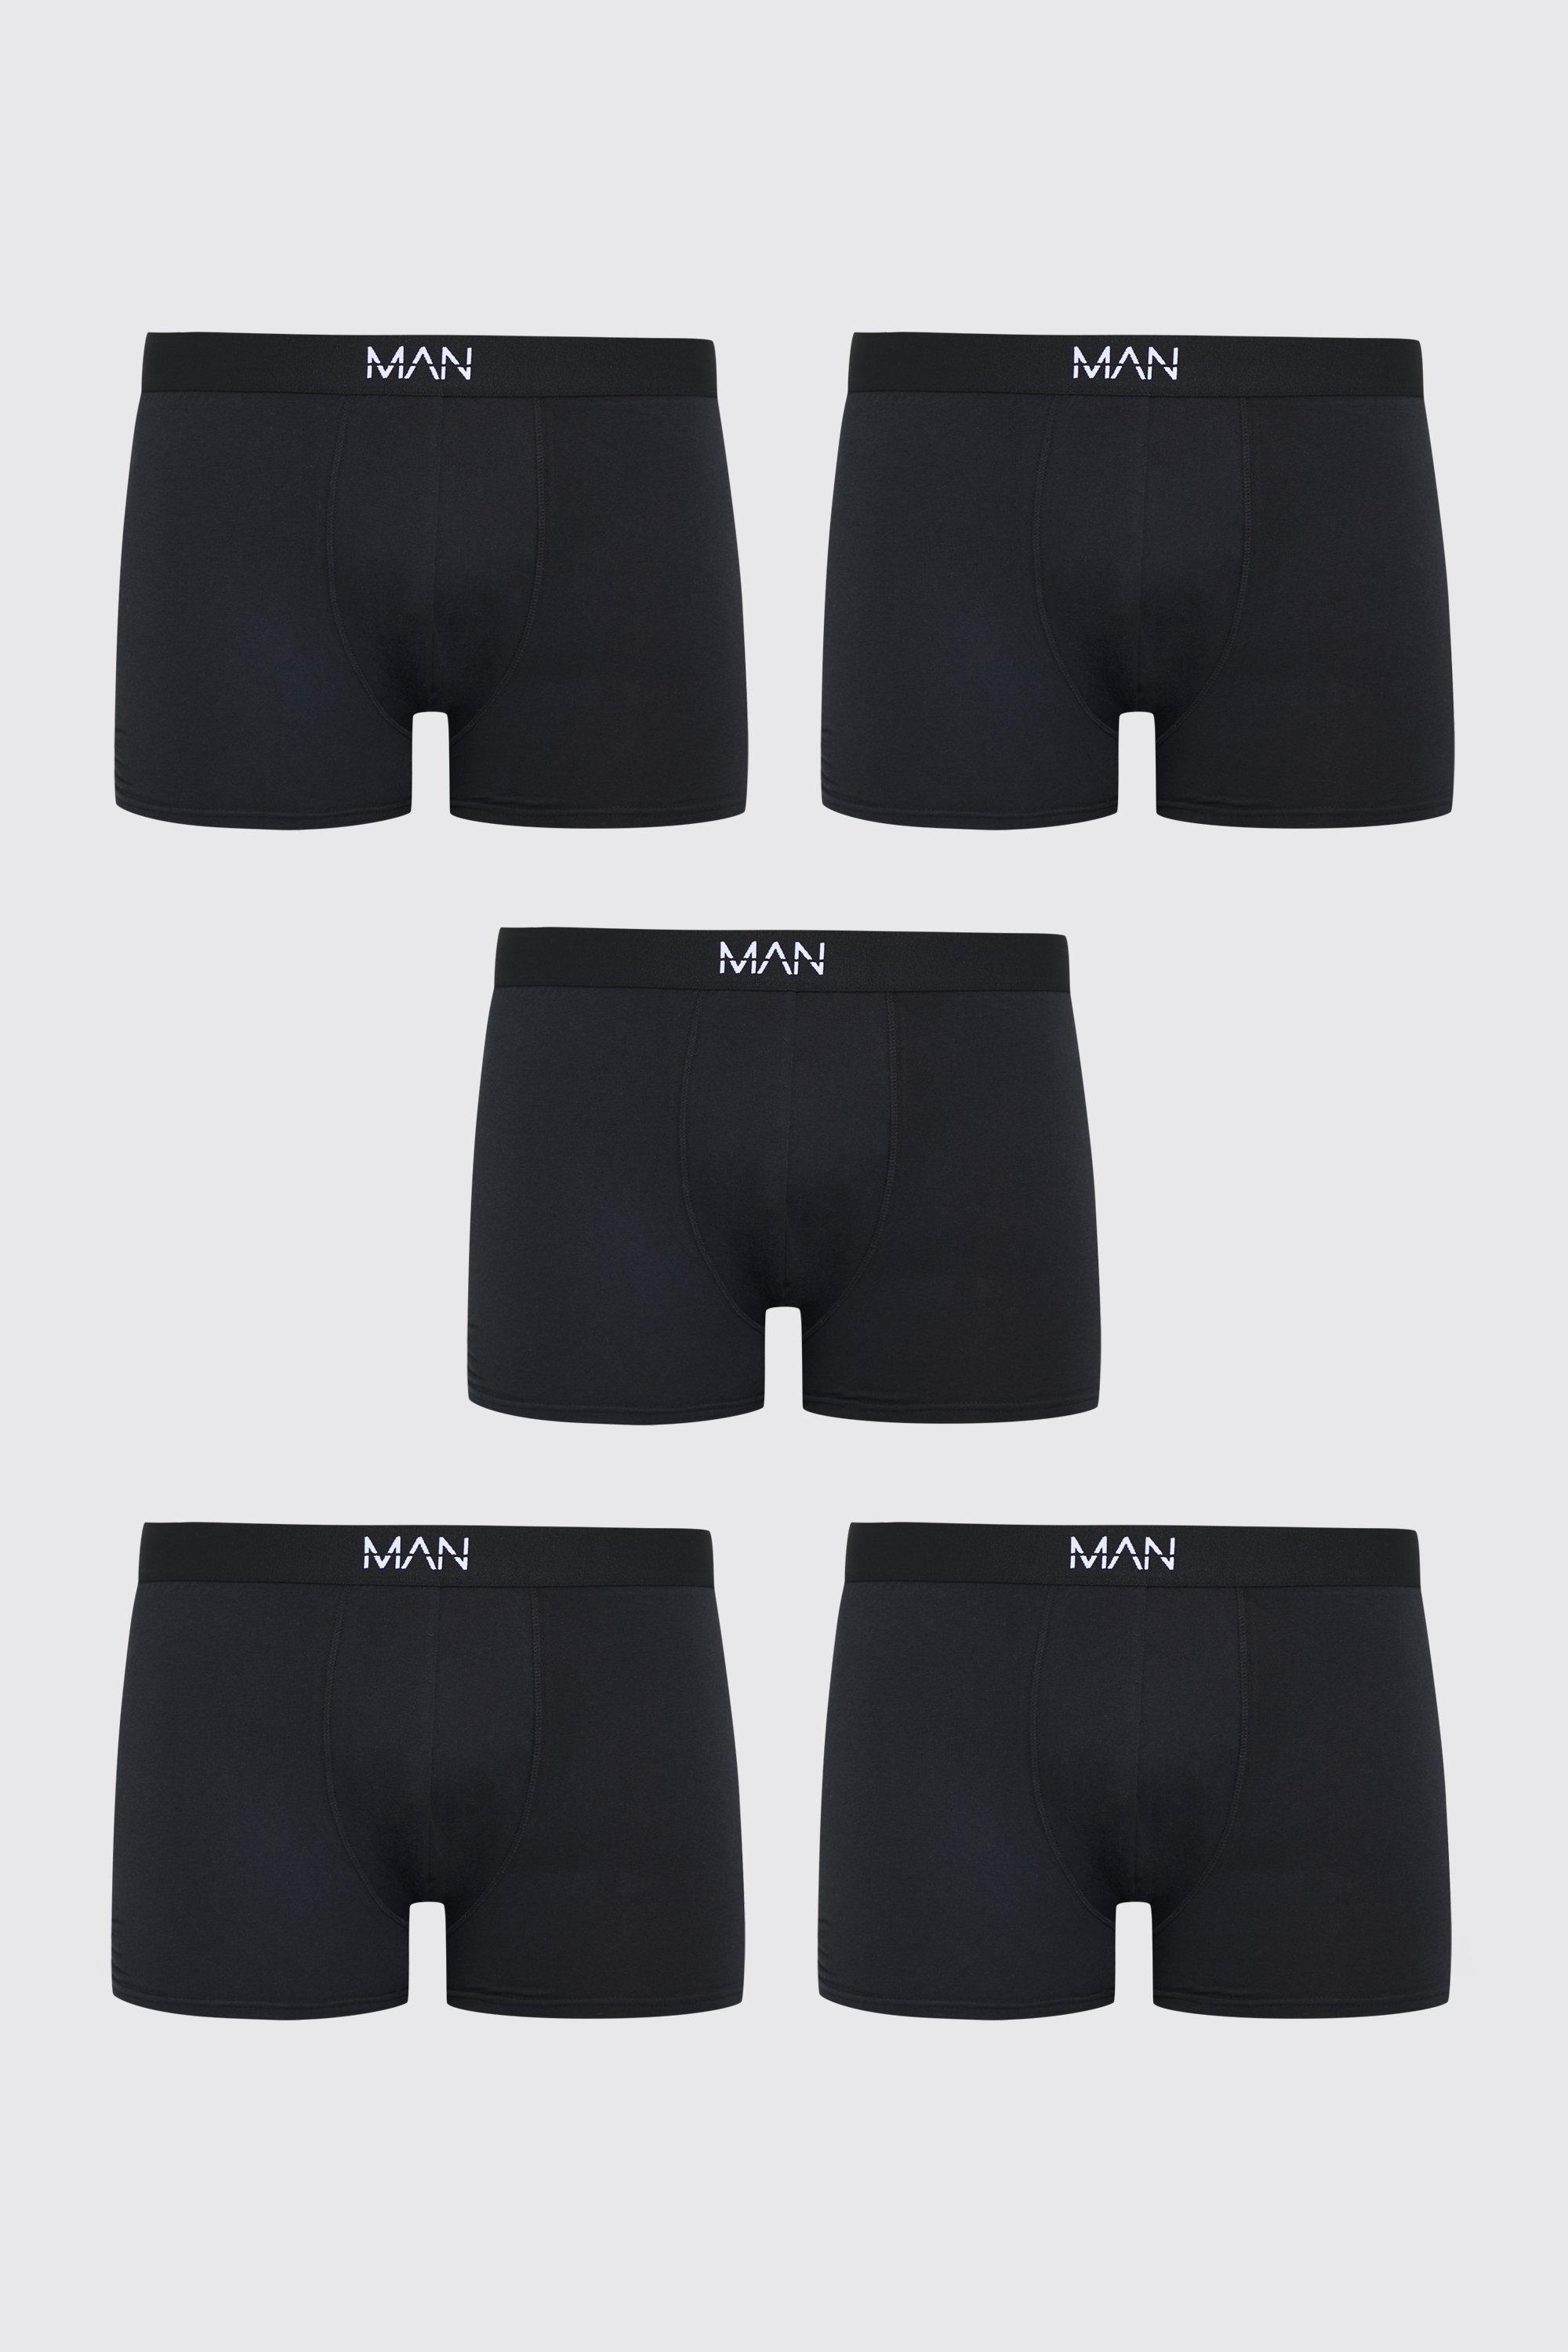 grande taille - lot de 5 boxers classiques neutres homme - noir - xxxxl, noir